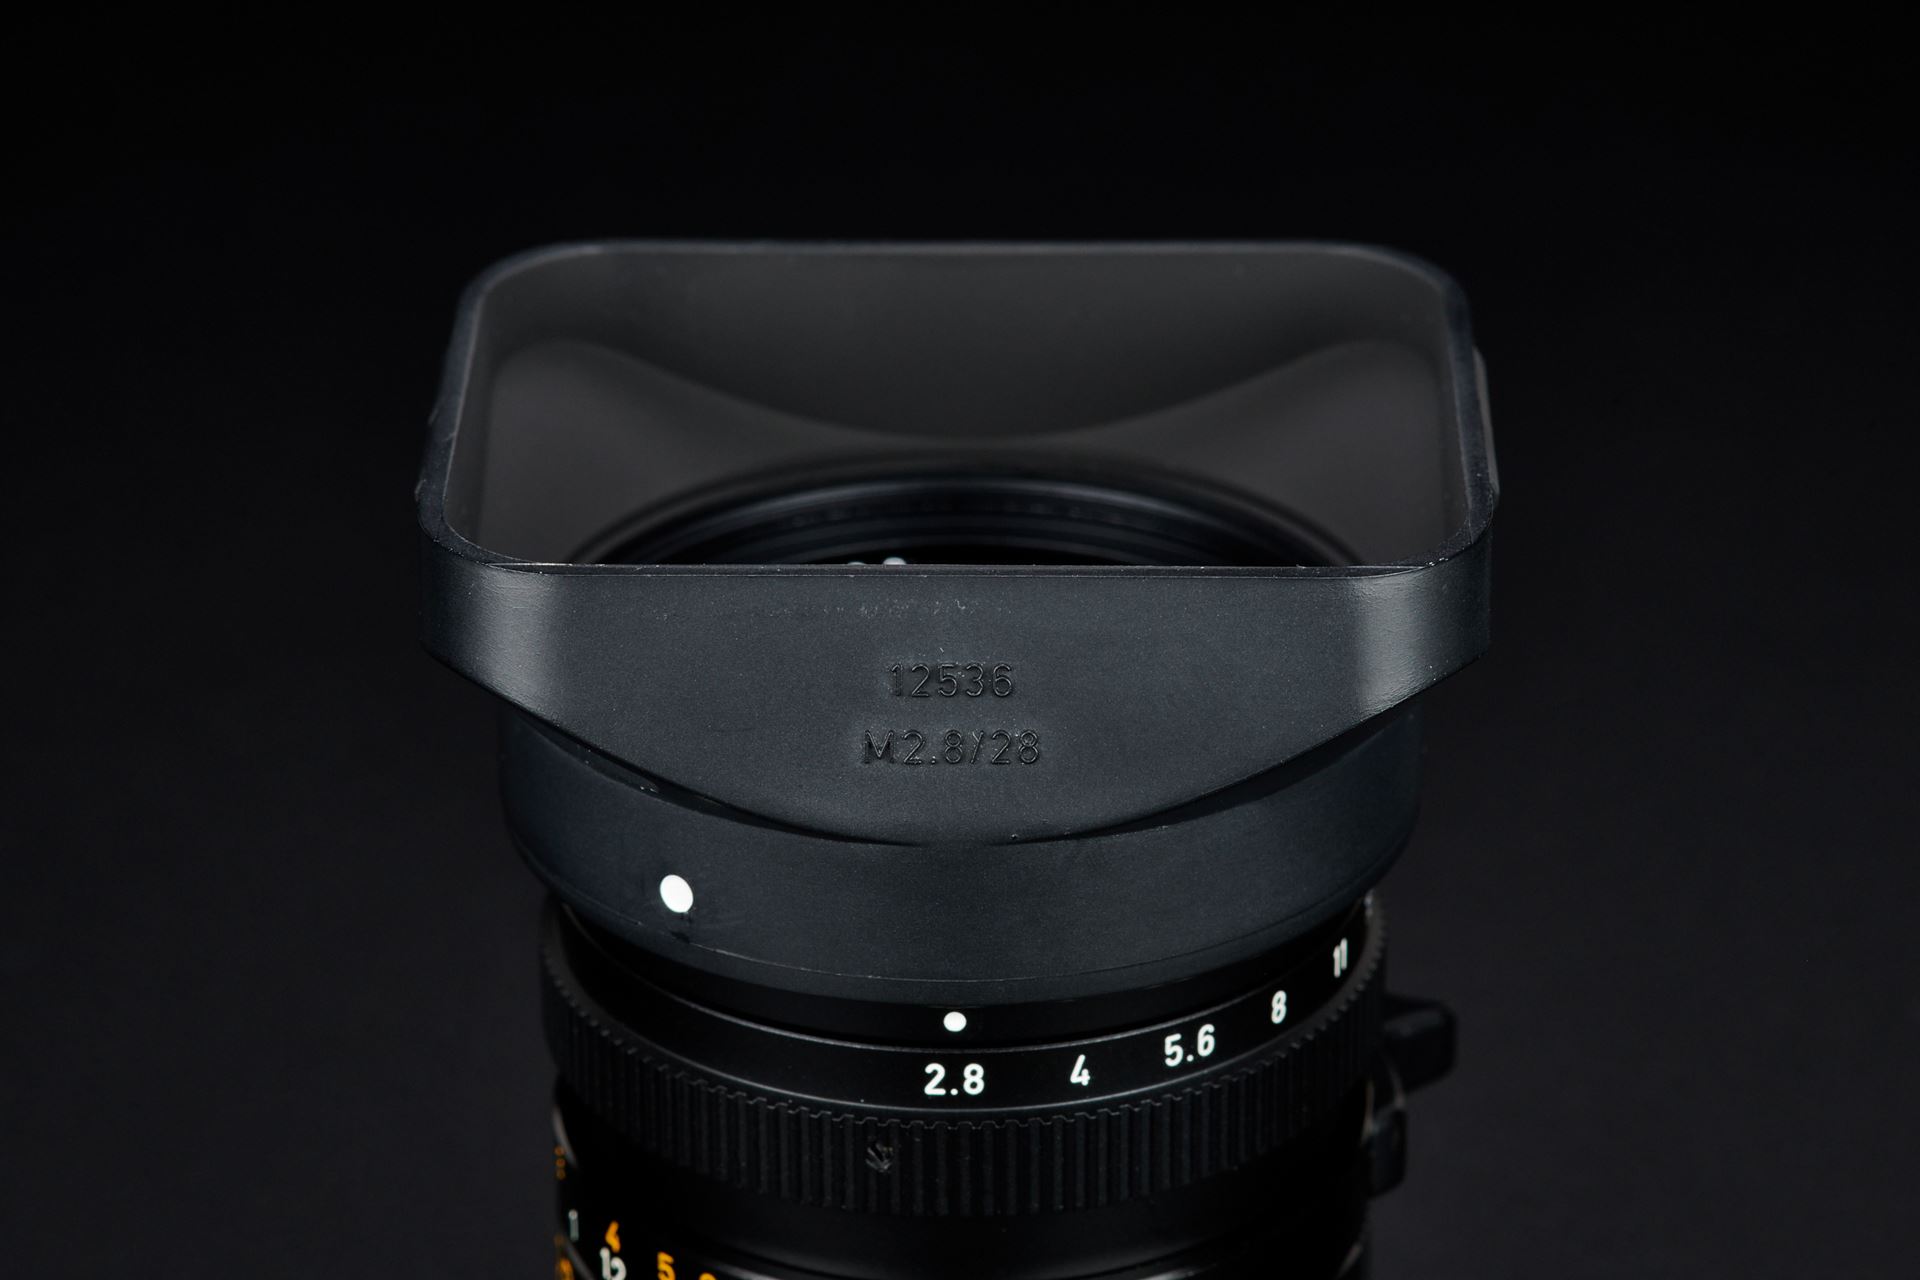 Picture of Leica Elmarit-M 28mm f/2.8 Ver. 3